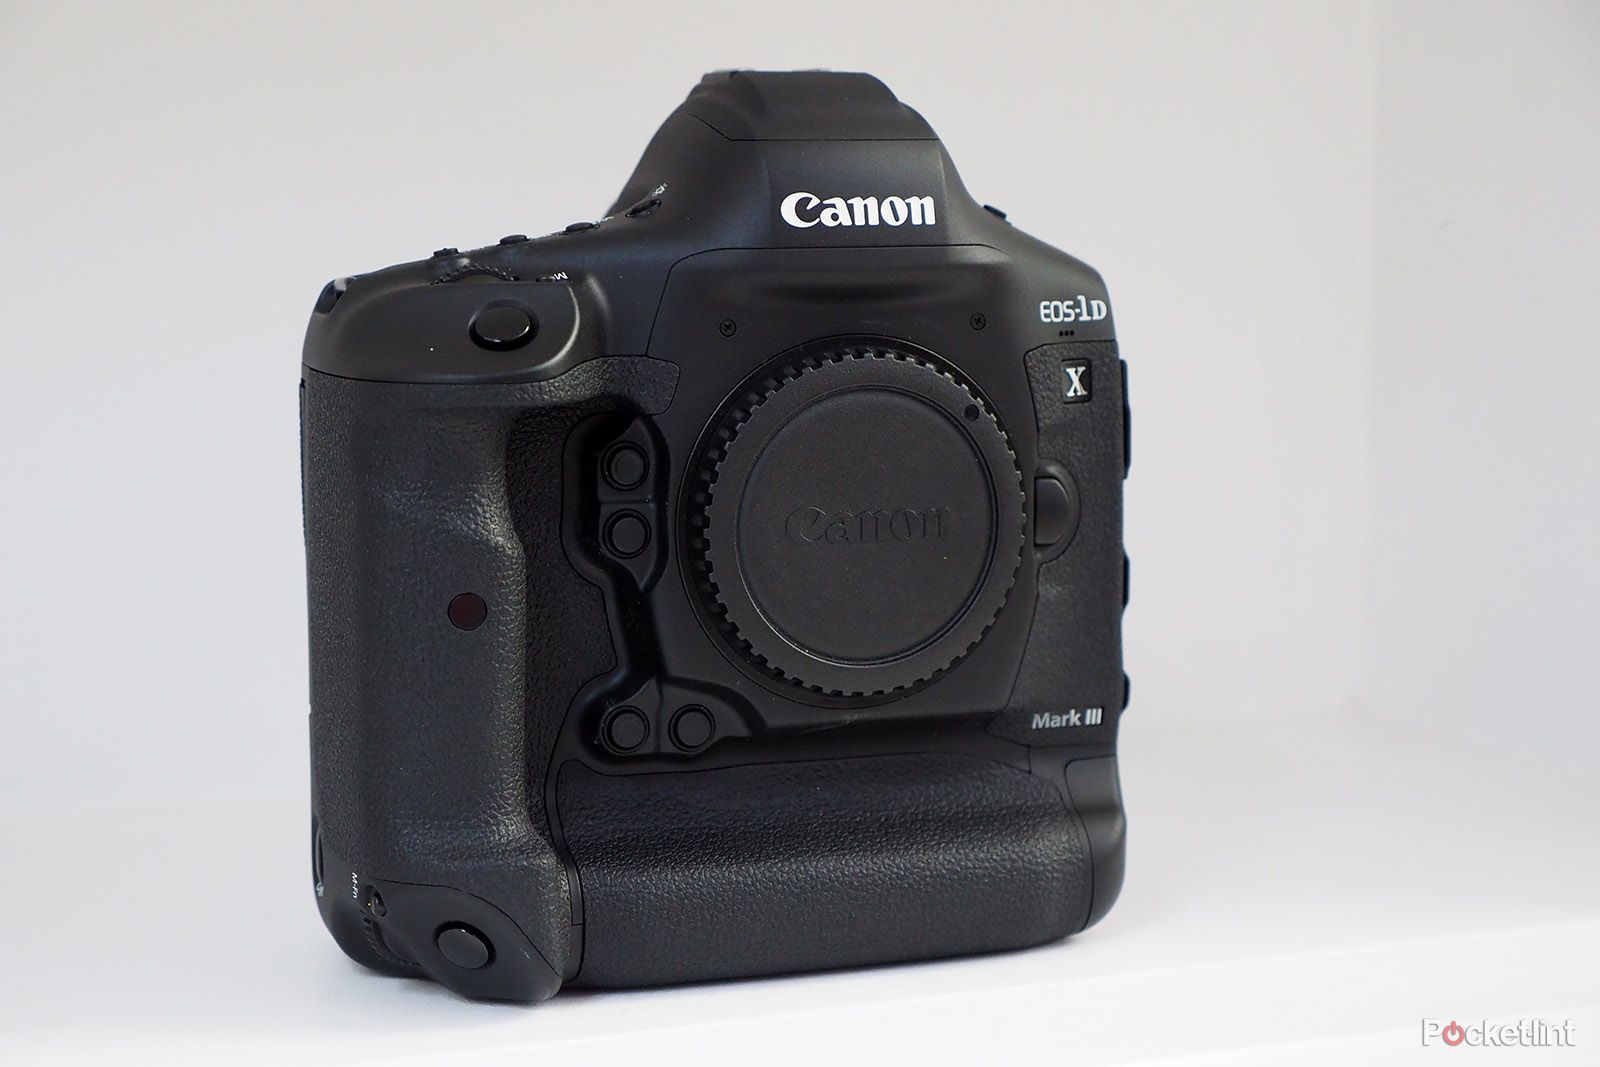 Canon EOS 1D X Mark III Specs image 1